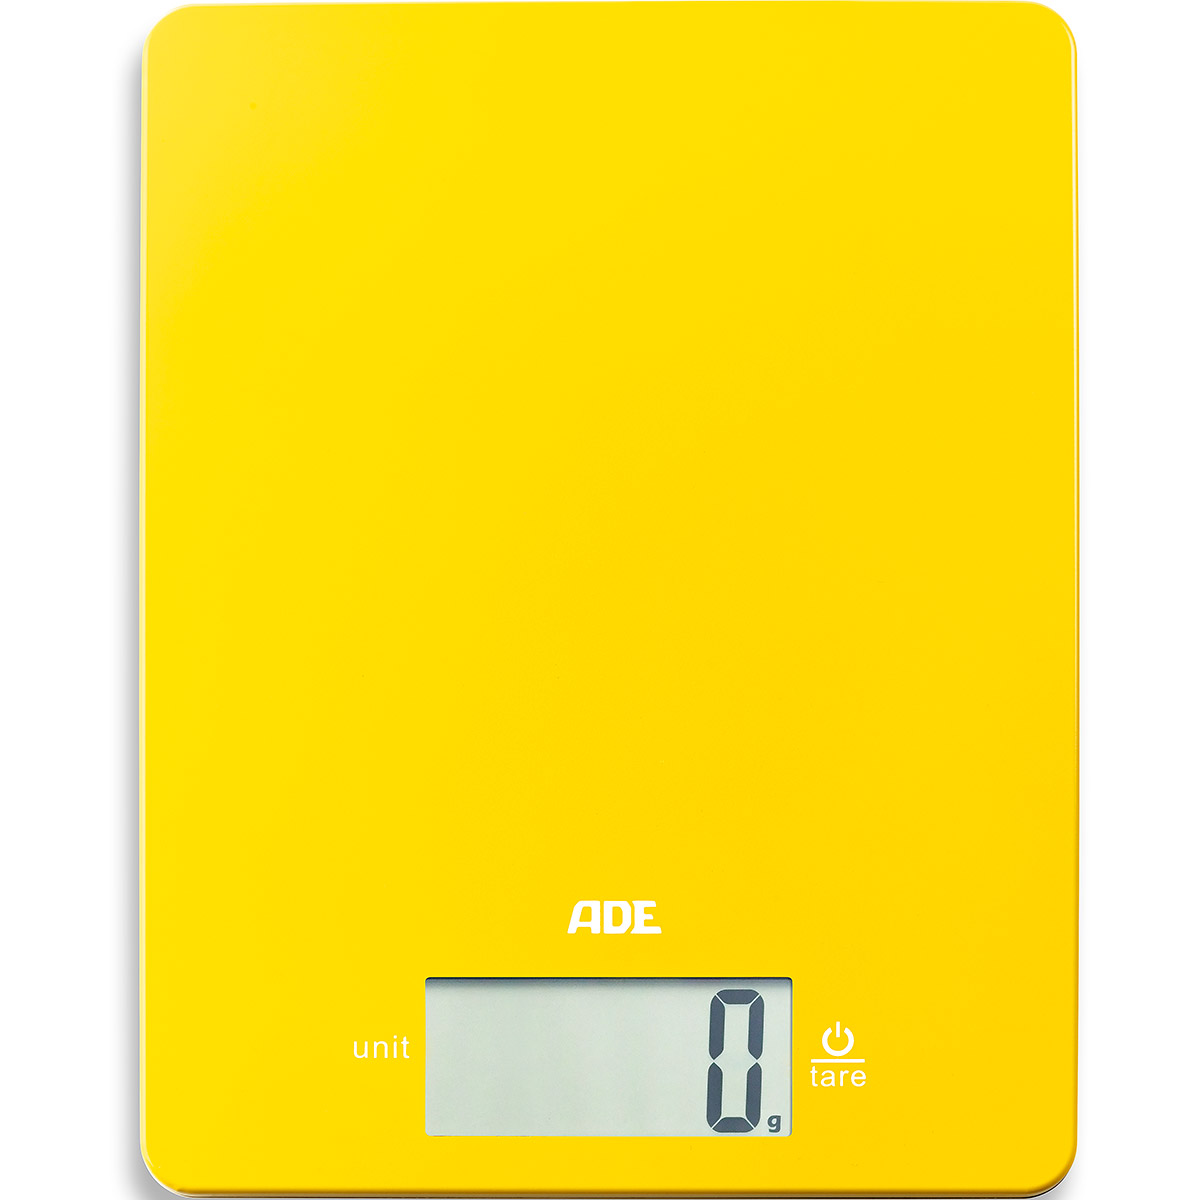 Waga elektroniczna Leonie do 5 kg ADE żółta sklep